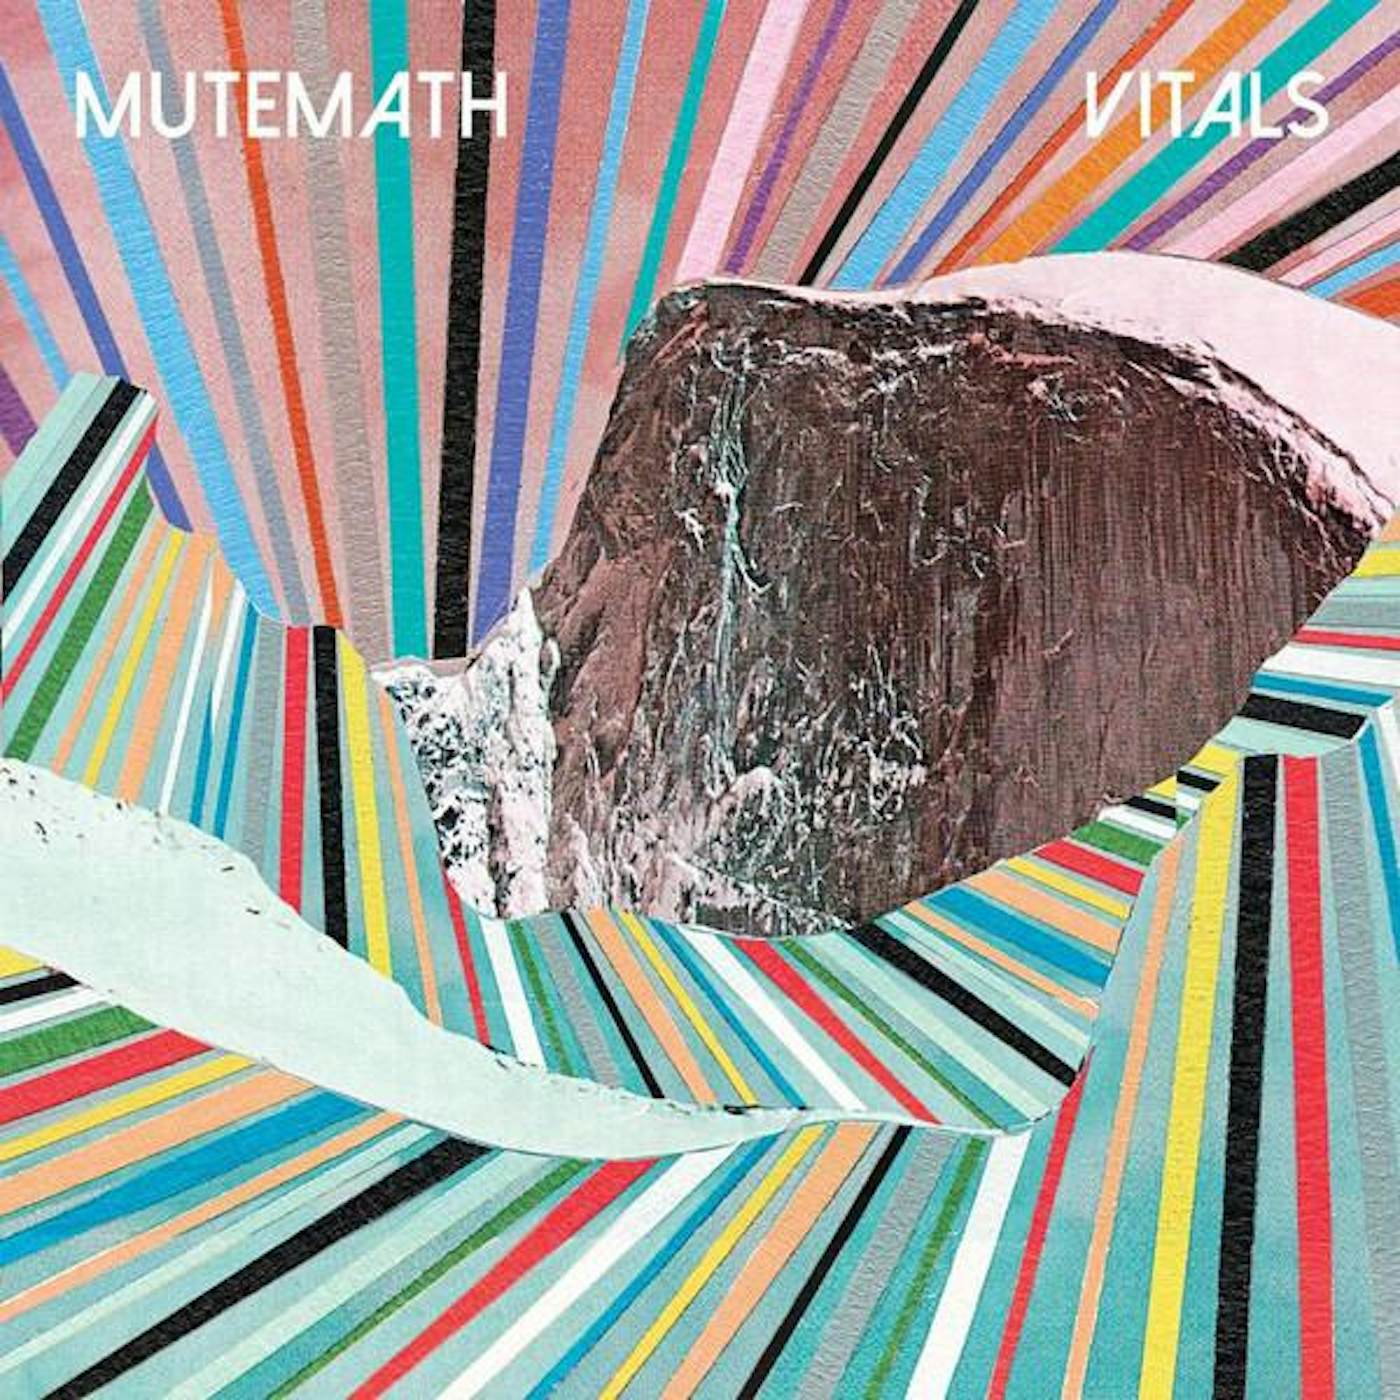 Mutemath VITALS CD